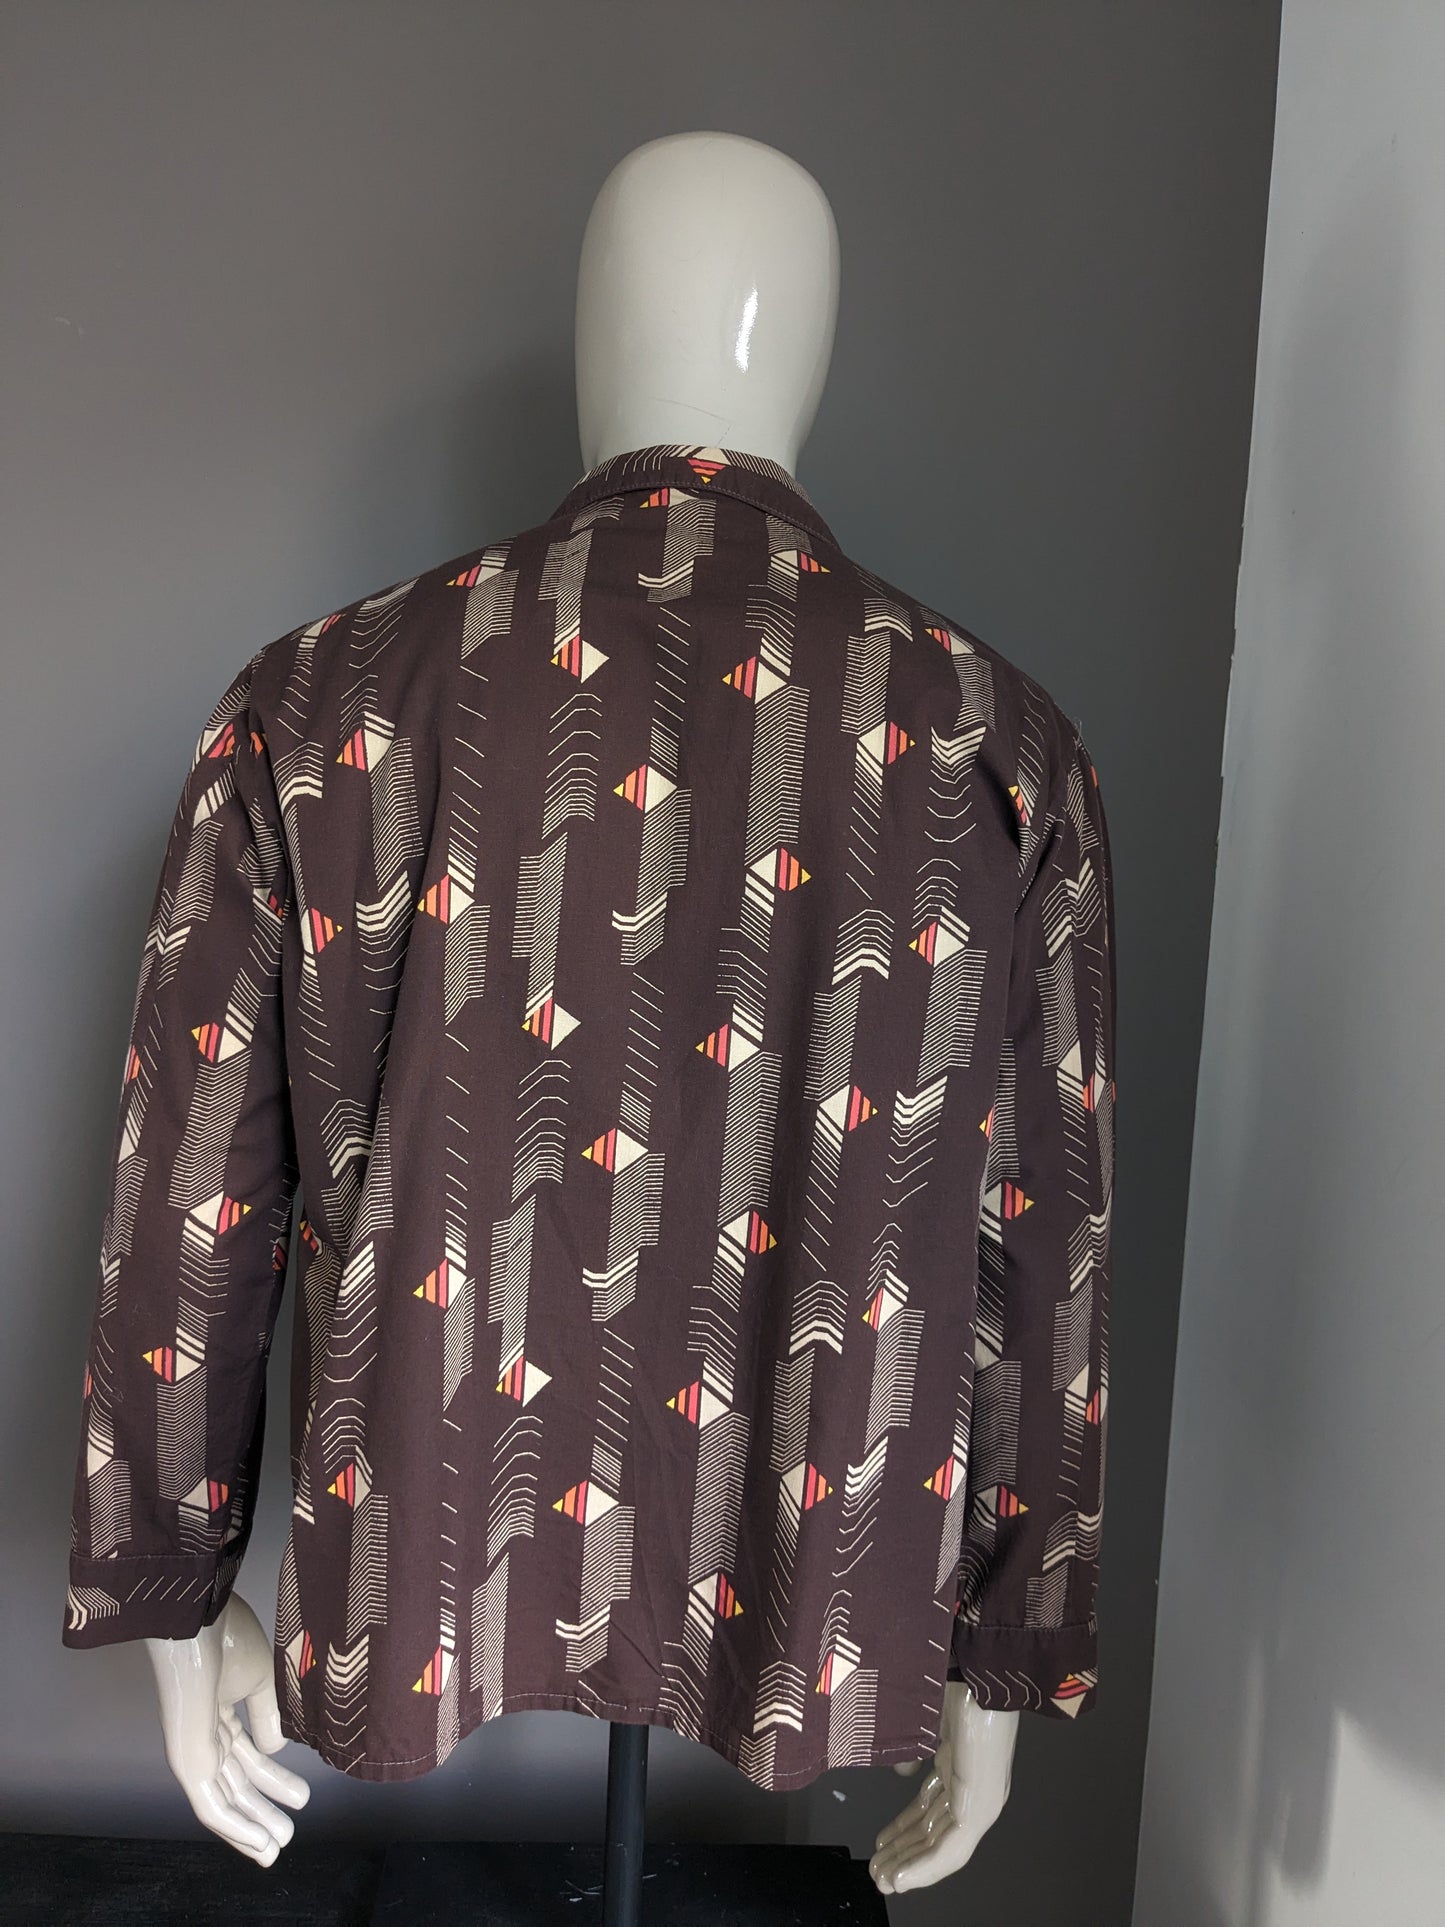 Shirt de Fourman des années 70 vintage avec collier. Impression jaune orange rouge marron. Taille 2xl / xxl.